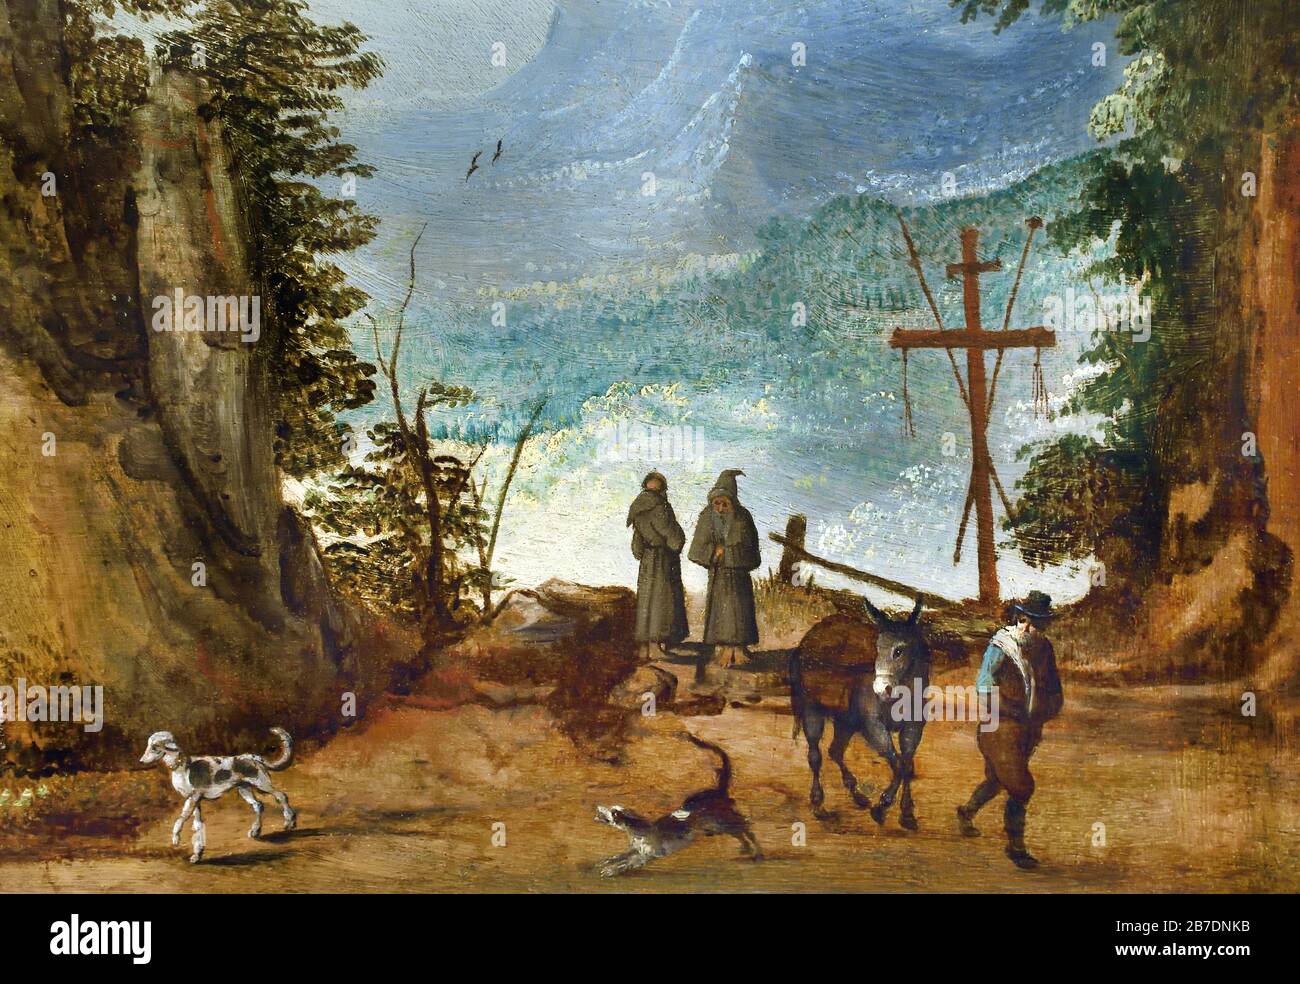 Paysage de montagne 1630 Joos de Momper 1564-1635 et Sebastian Vrancx 1573-1647 peintres flamands du XVIe au XVIIe siècle, belge, Belgique. Banque D'Images